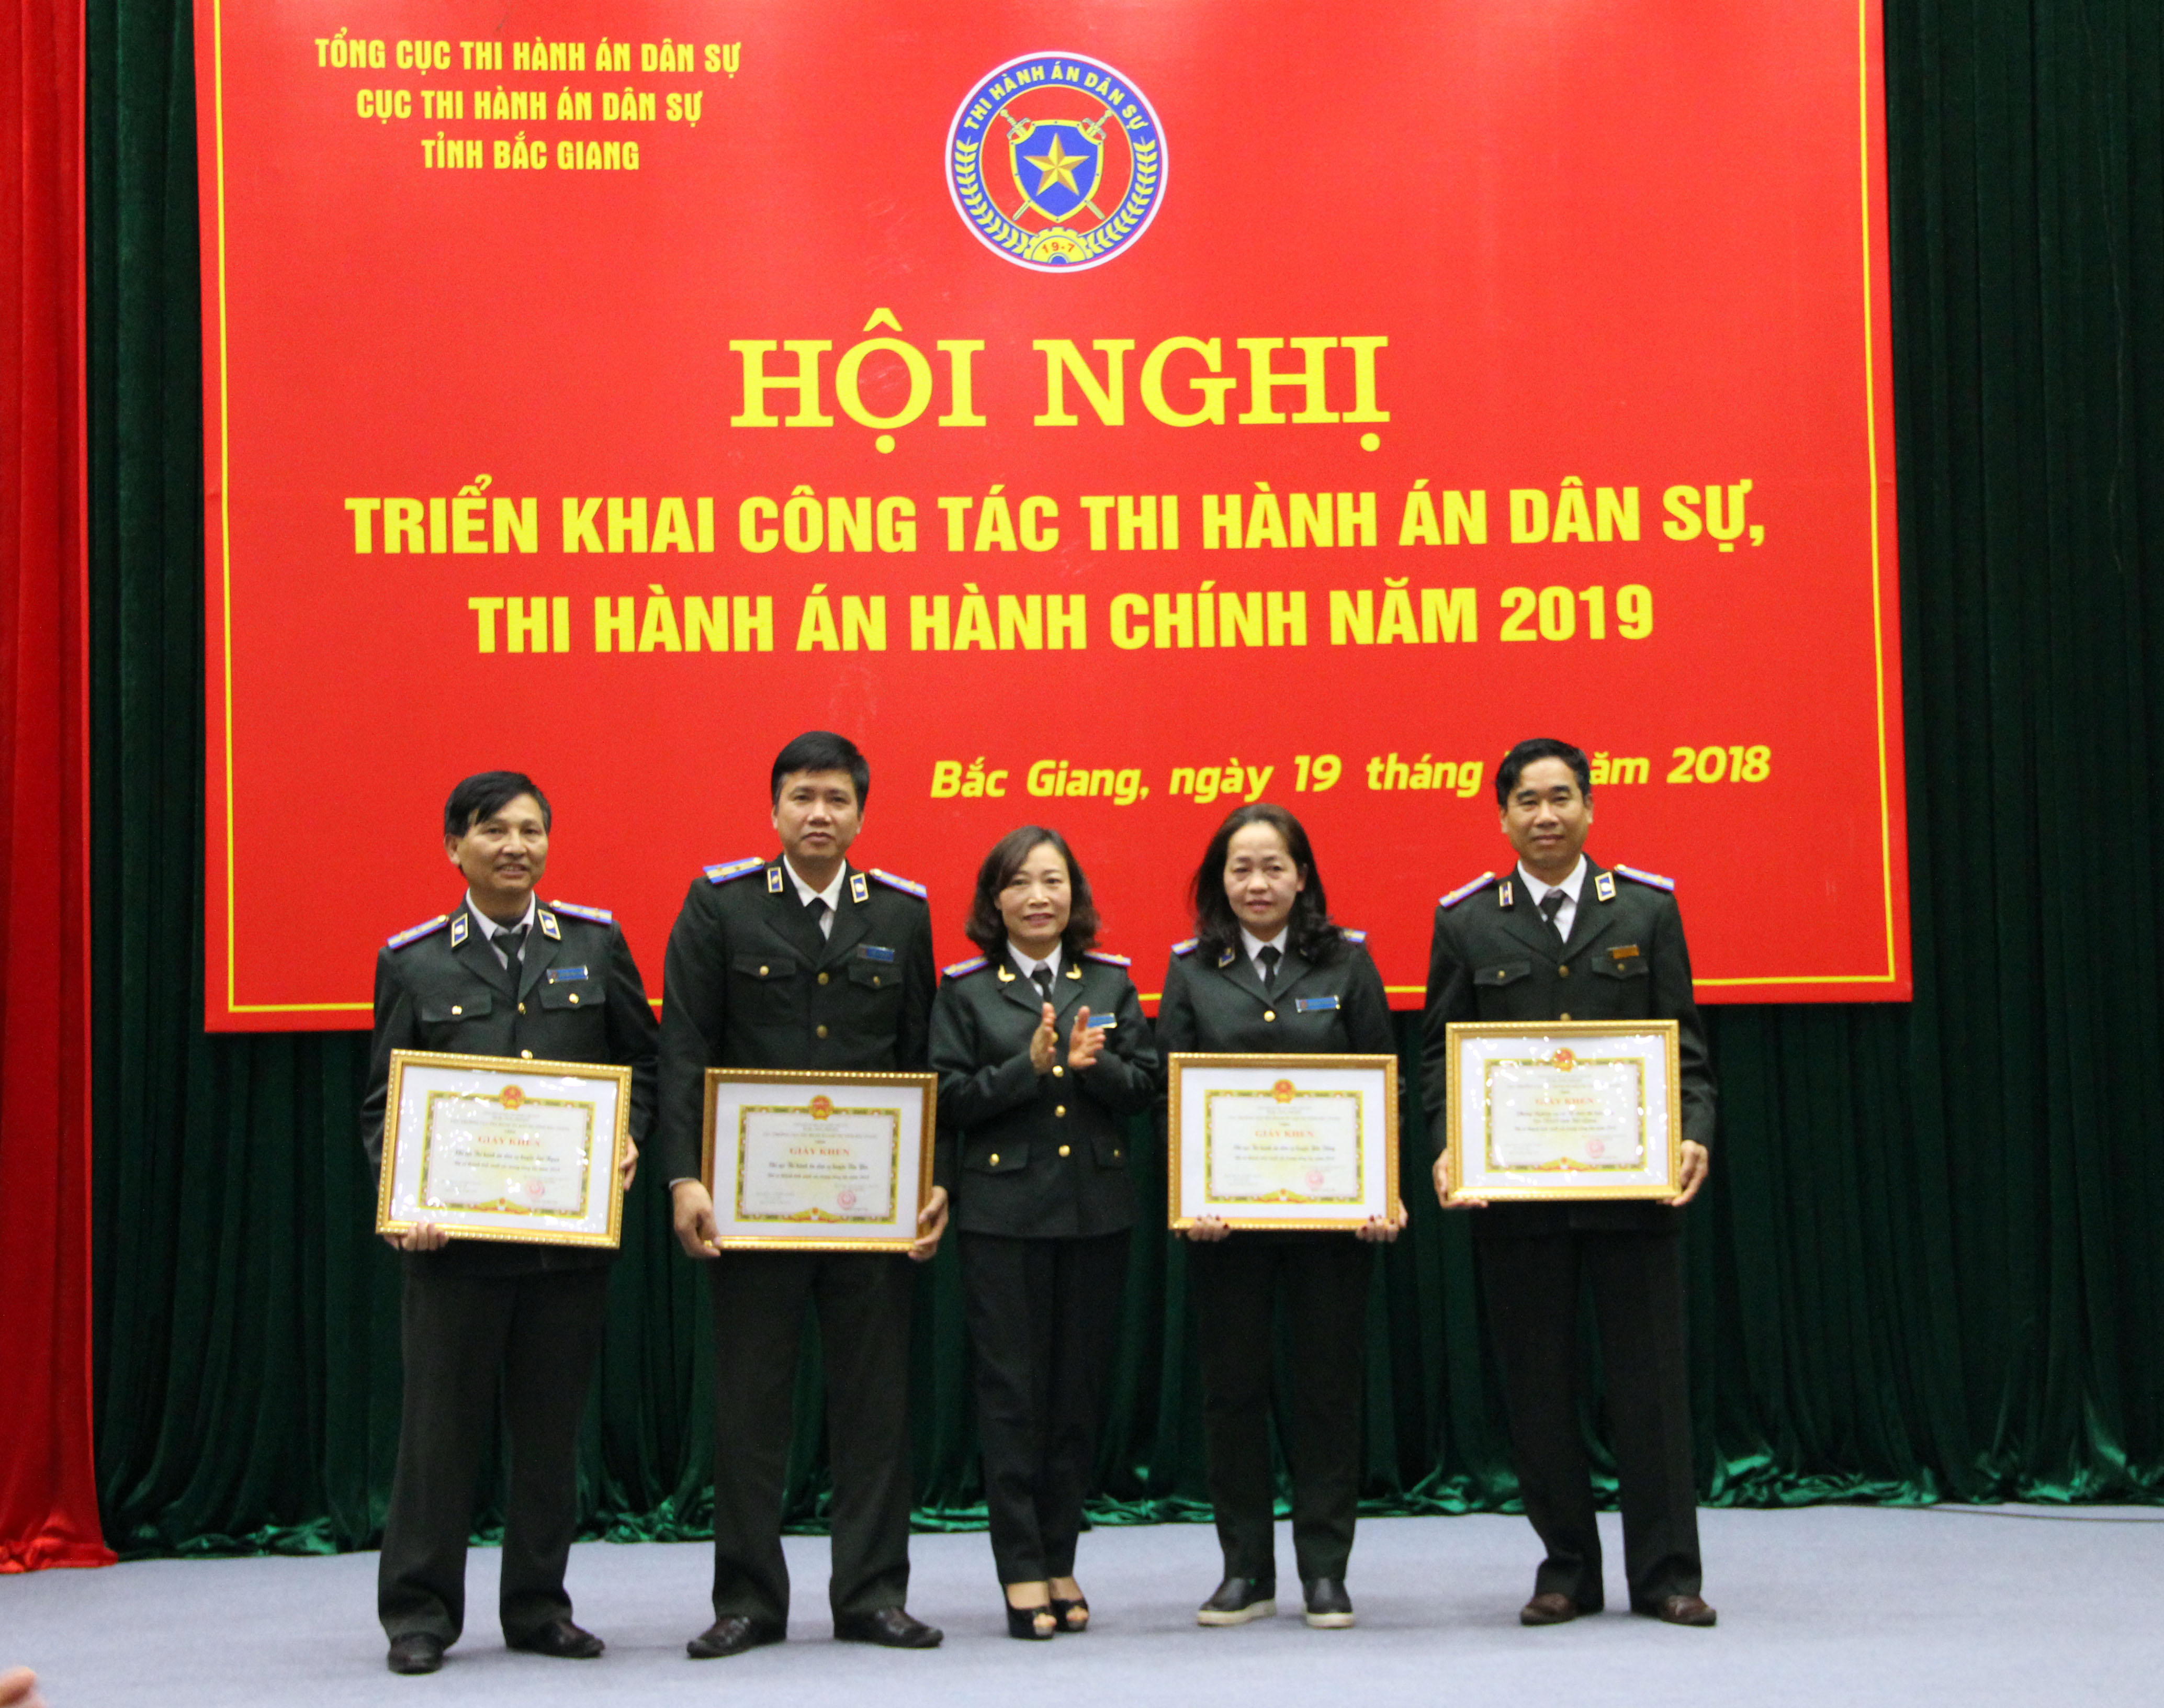 Cục Thi hành án dân sự tỉnh Bắc Giang tổ chức Hội nghị triển khai công tác thi hành án dân sự, hành chính năm 2019